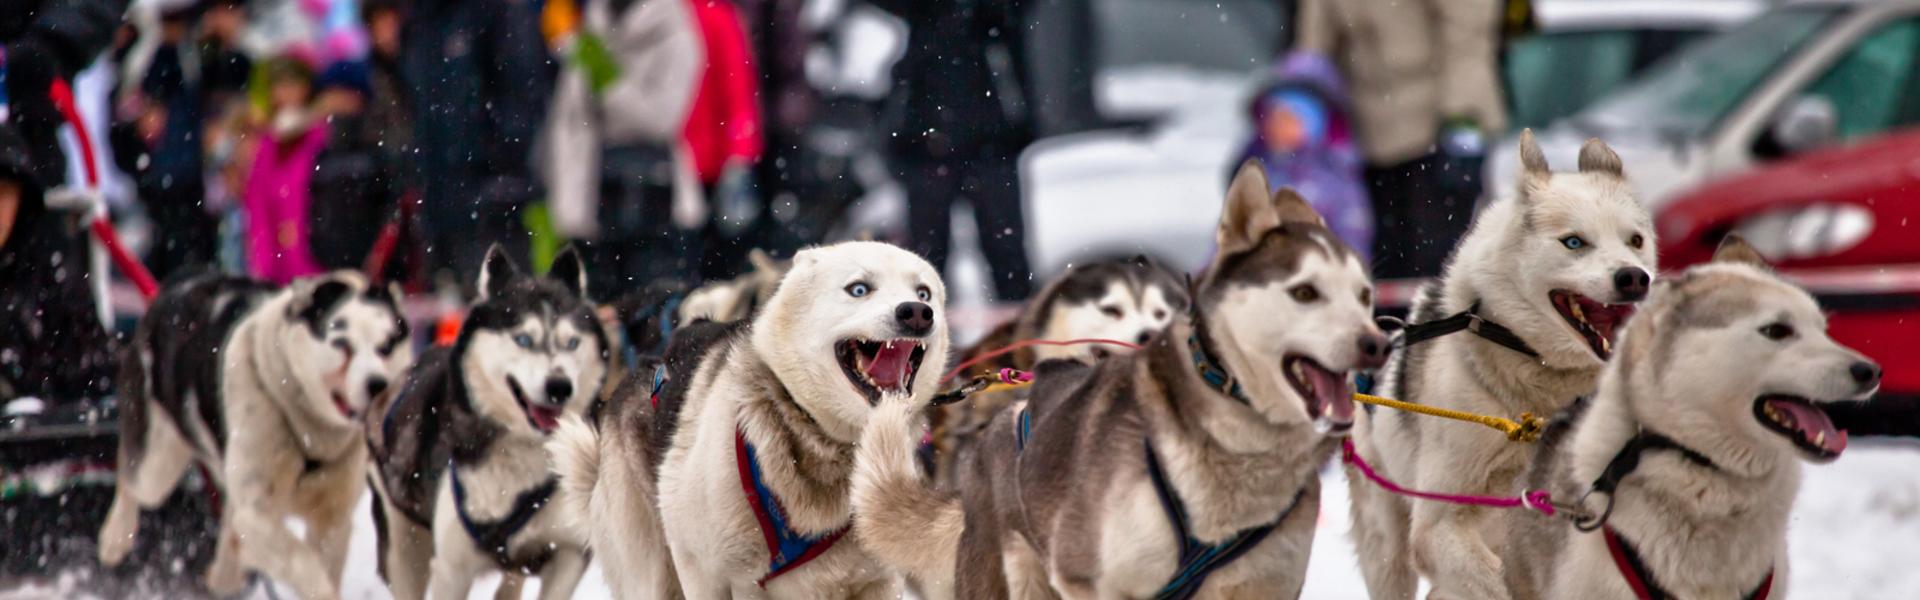 Obrazek: Małopolska zimą. Psie zaprzęgi – rekreacja dla miłośników ruchu i zwierząt